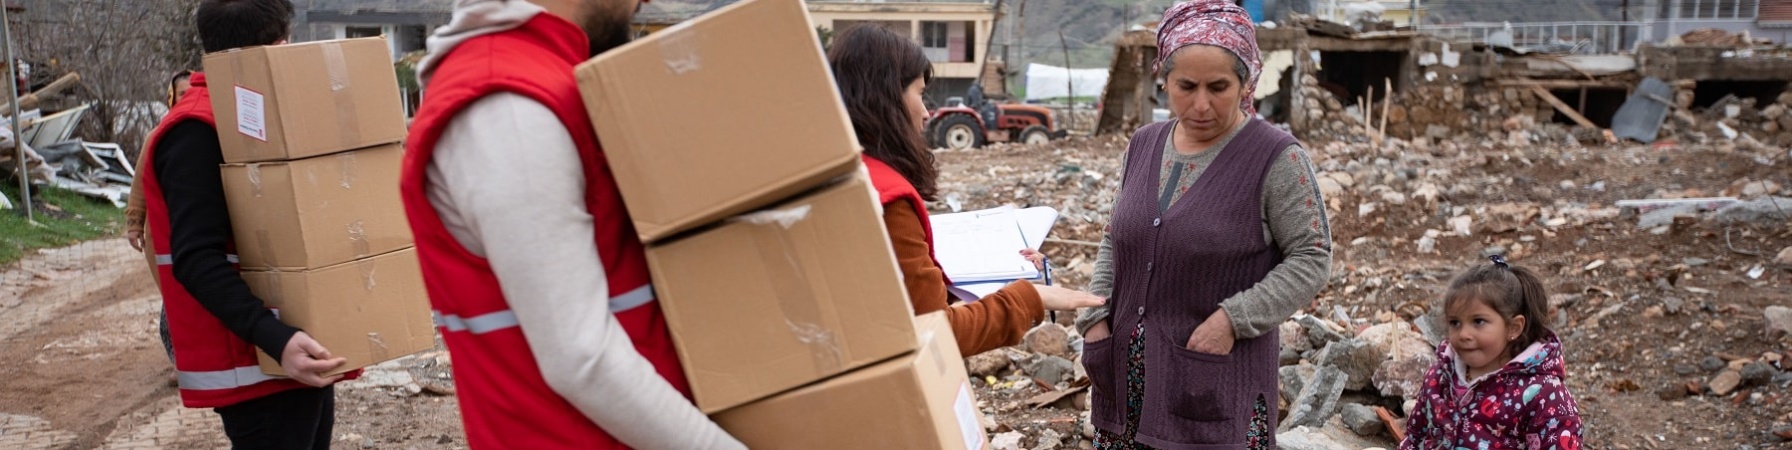 Operatore Save the children durante l intervento di aiuto per il terremoto in turchia e siria